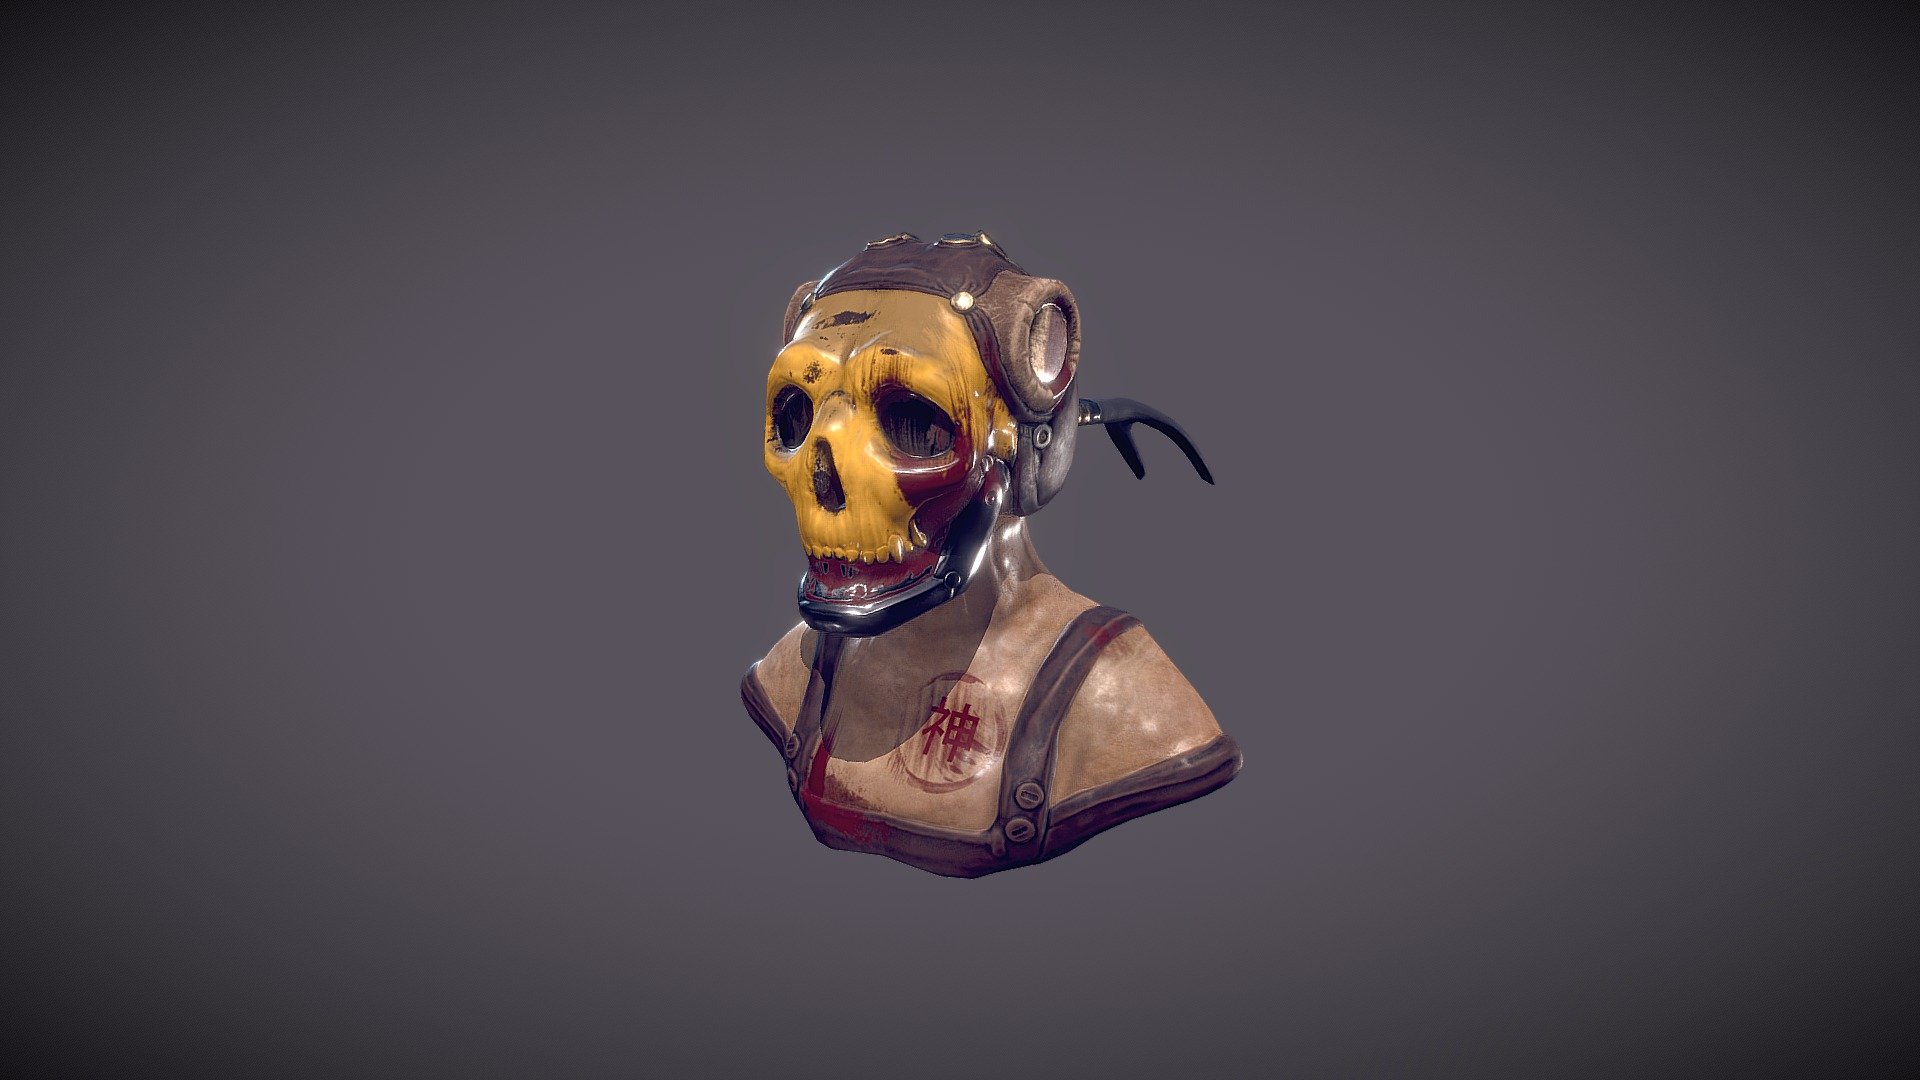 Skull Helm / Mad Max inspired desert punk